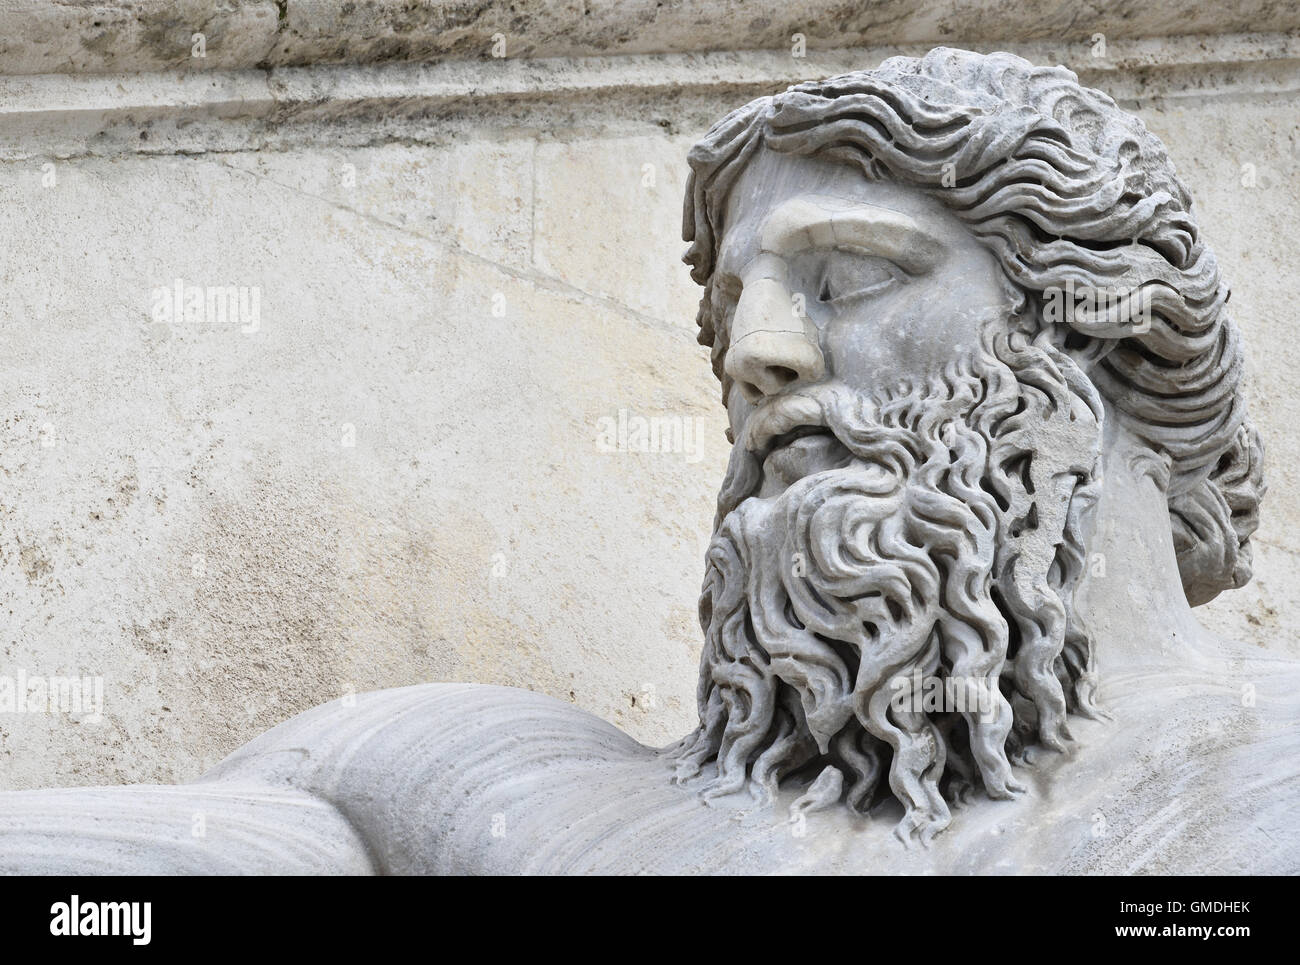 En tête de la rivière du Nil dieu statue romaine antique, à la place du Capitole, Rome Banque D'Images